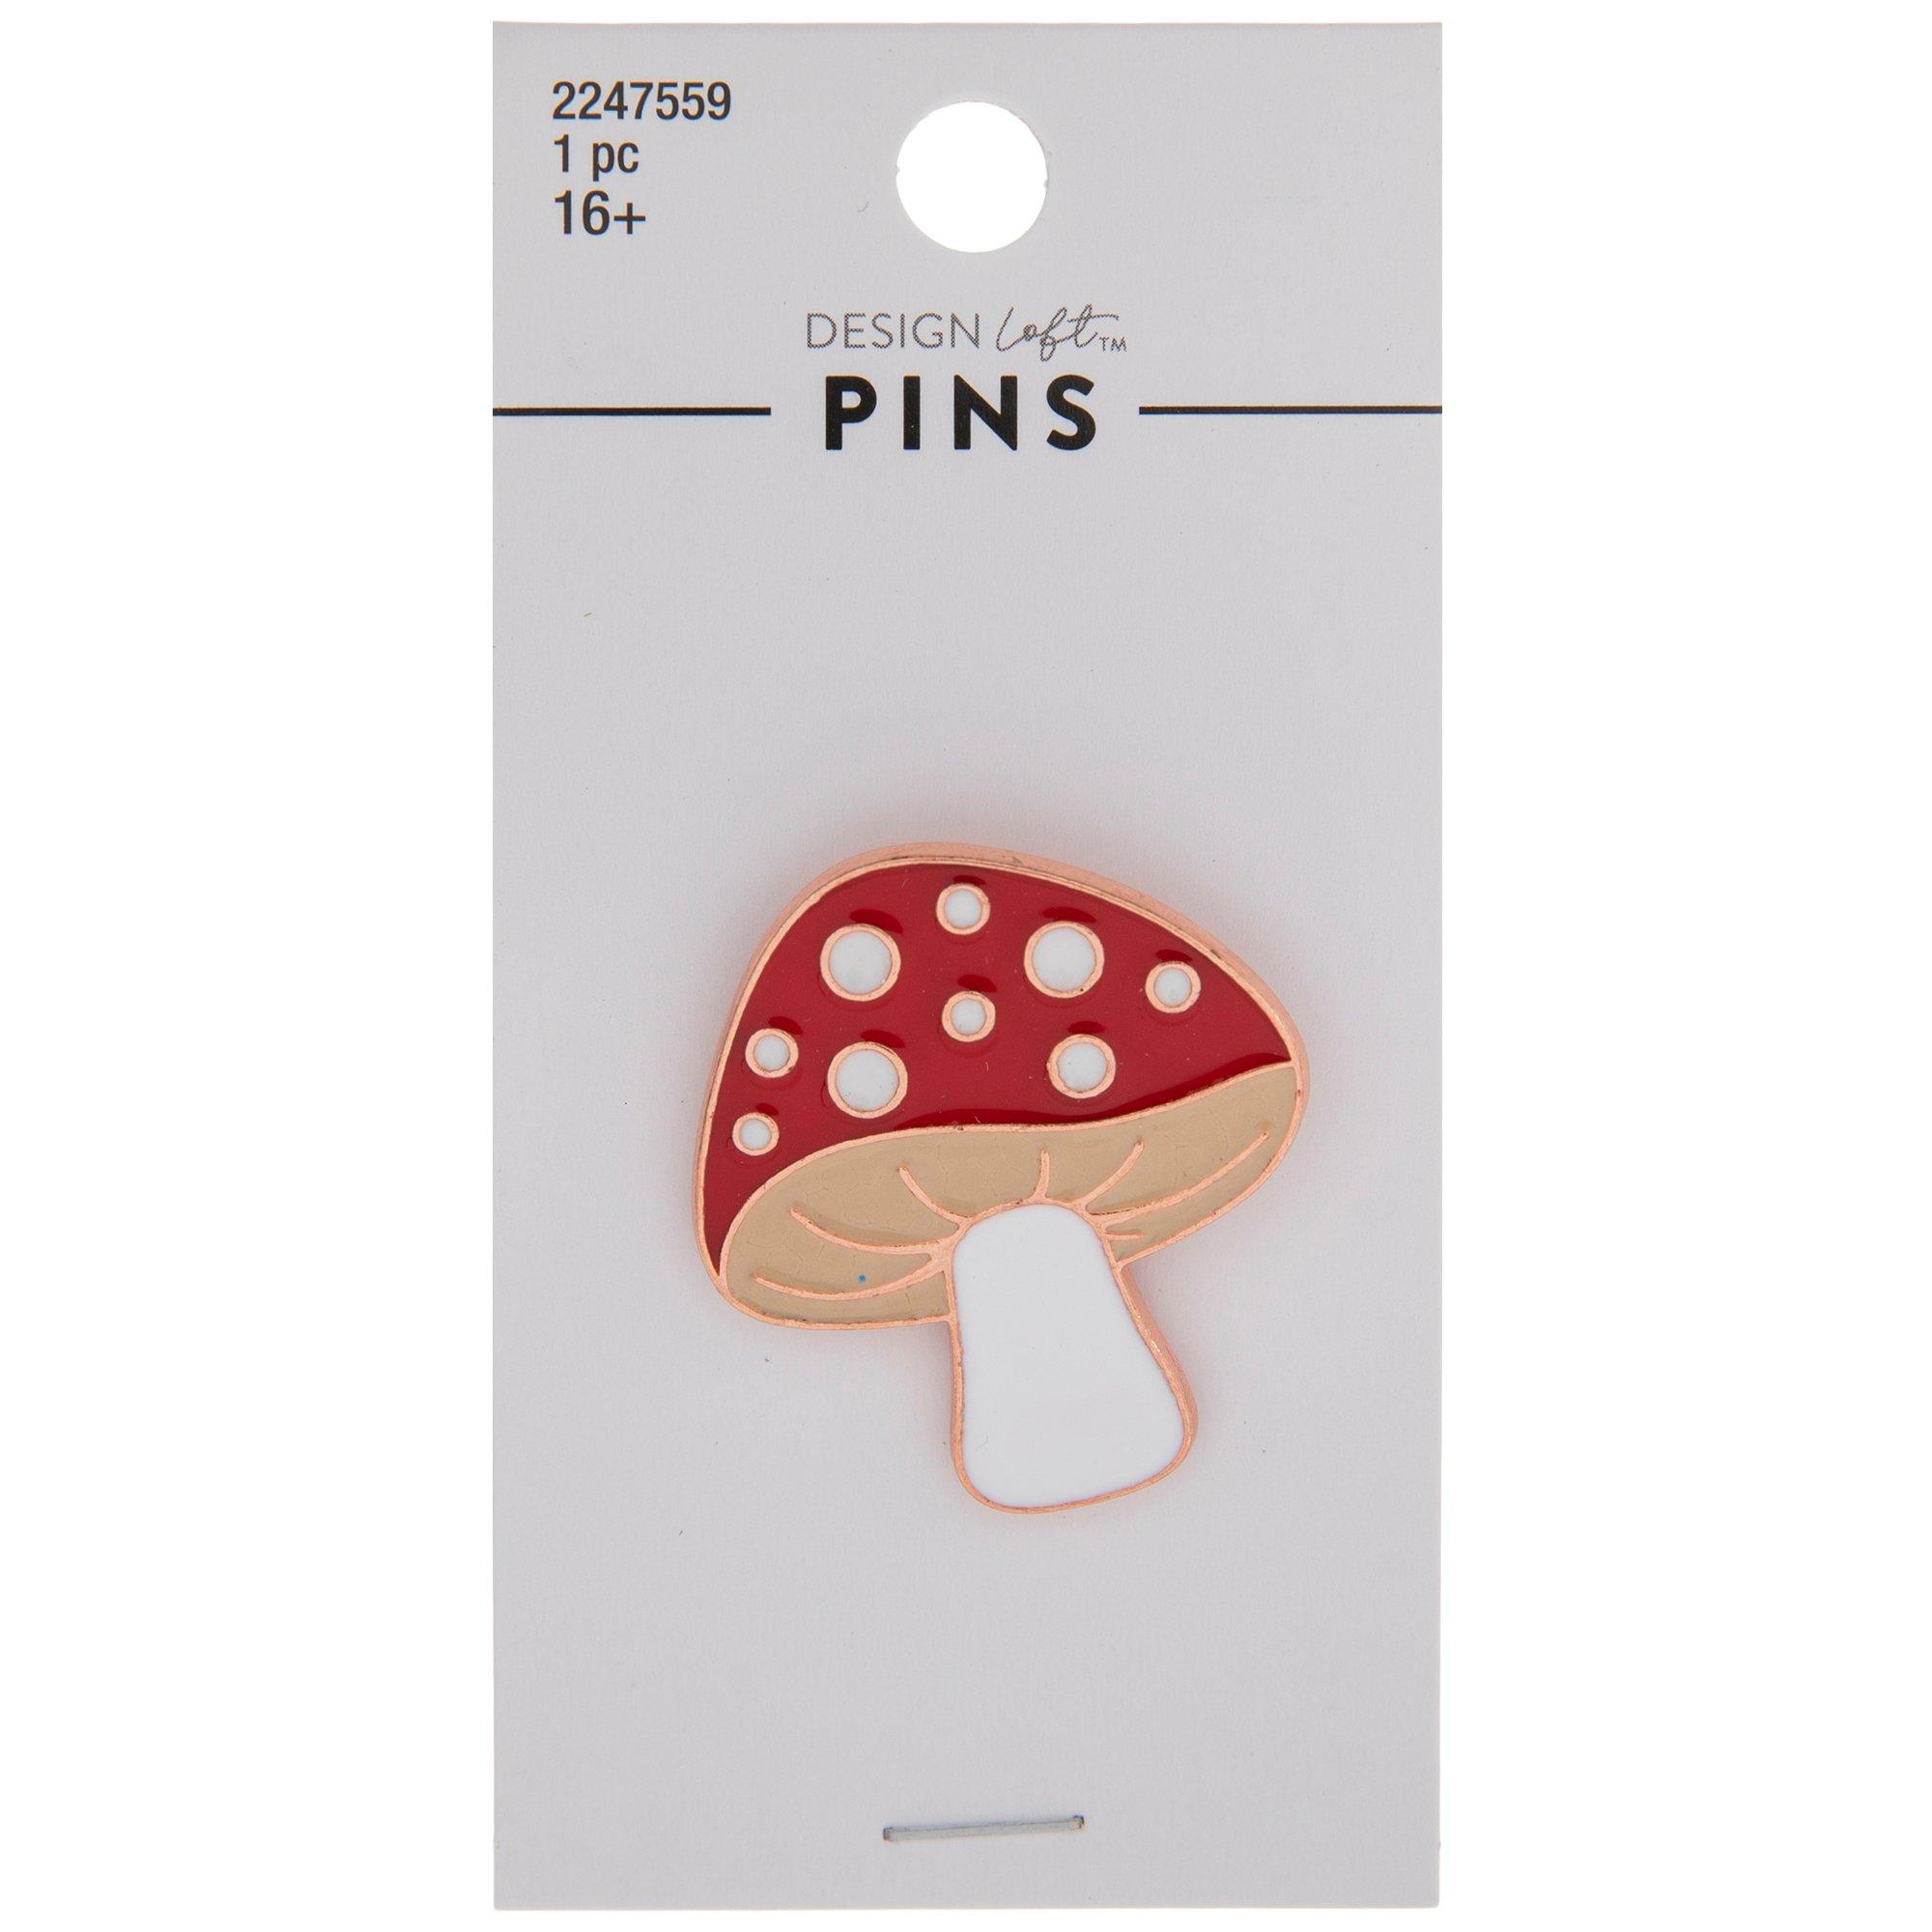 Pin on Mushroom